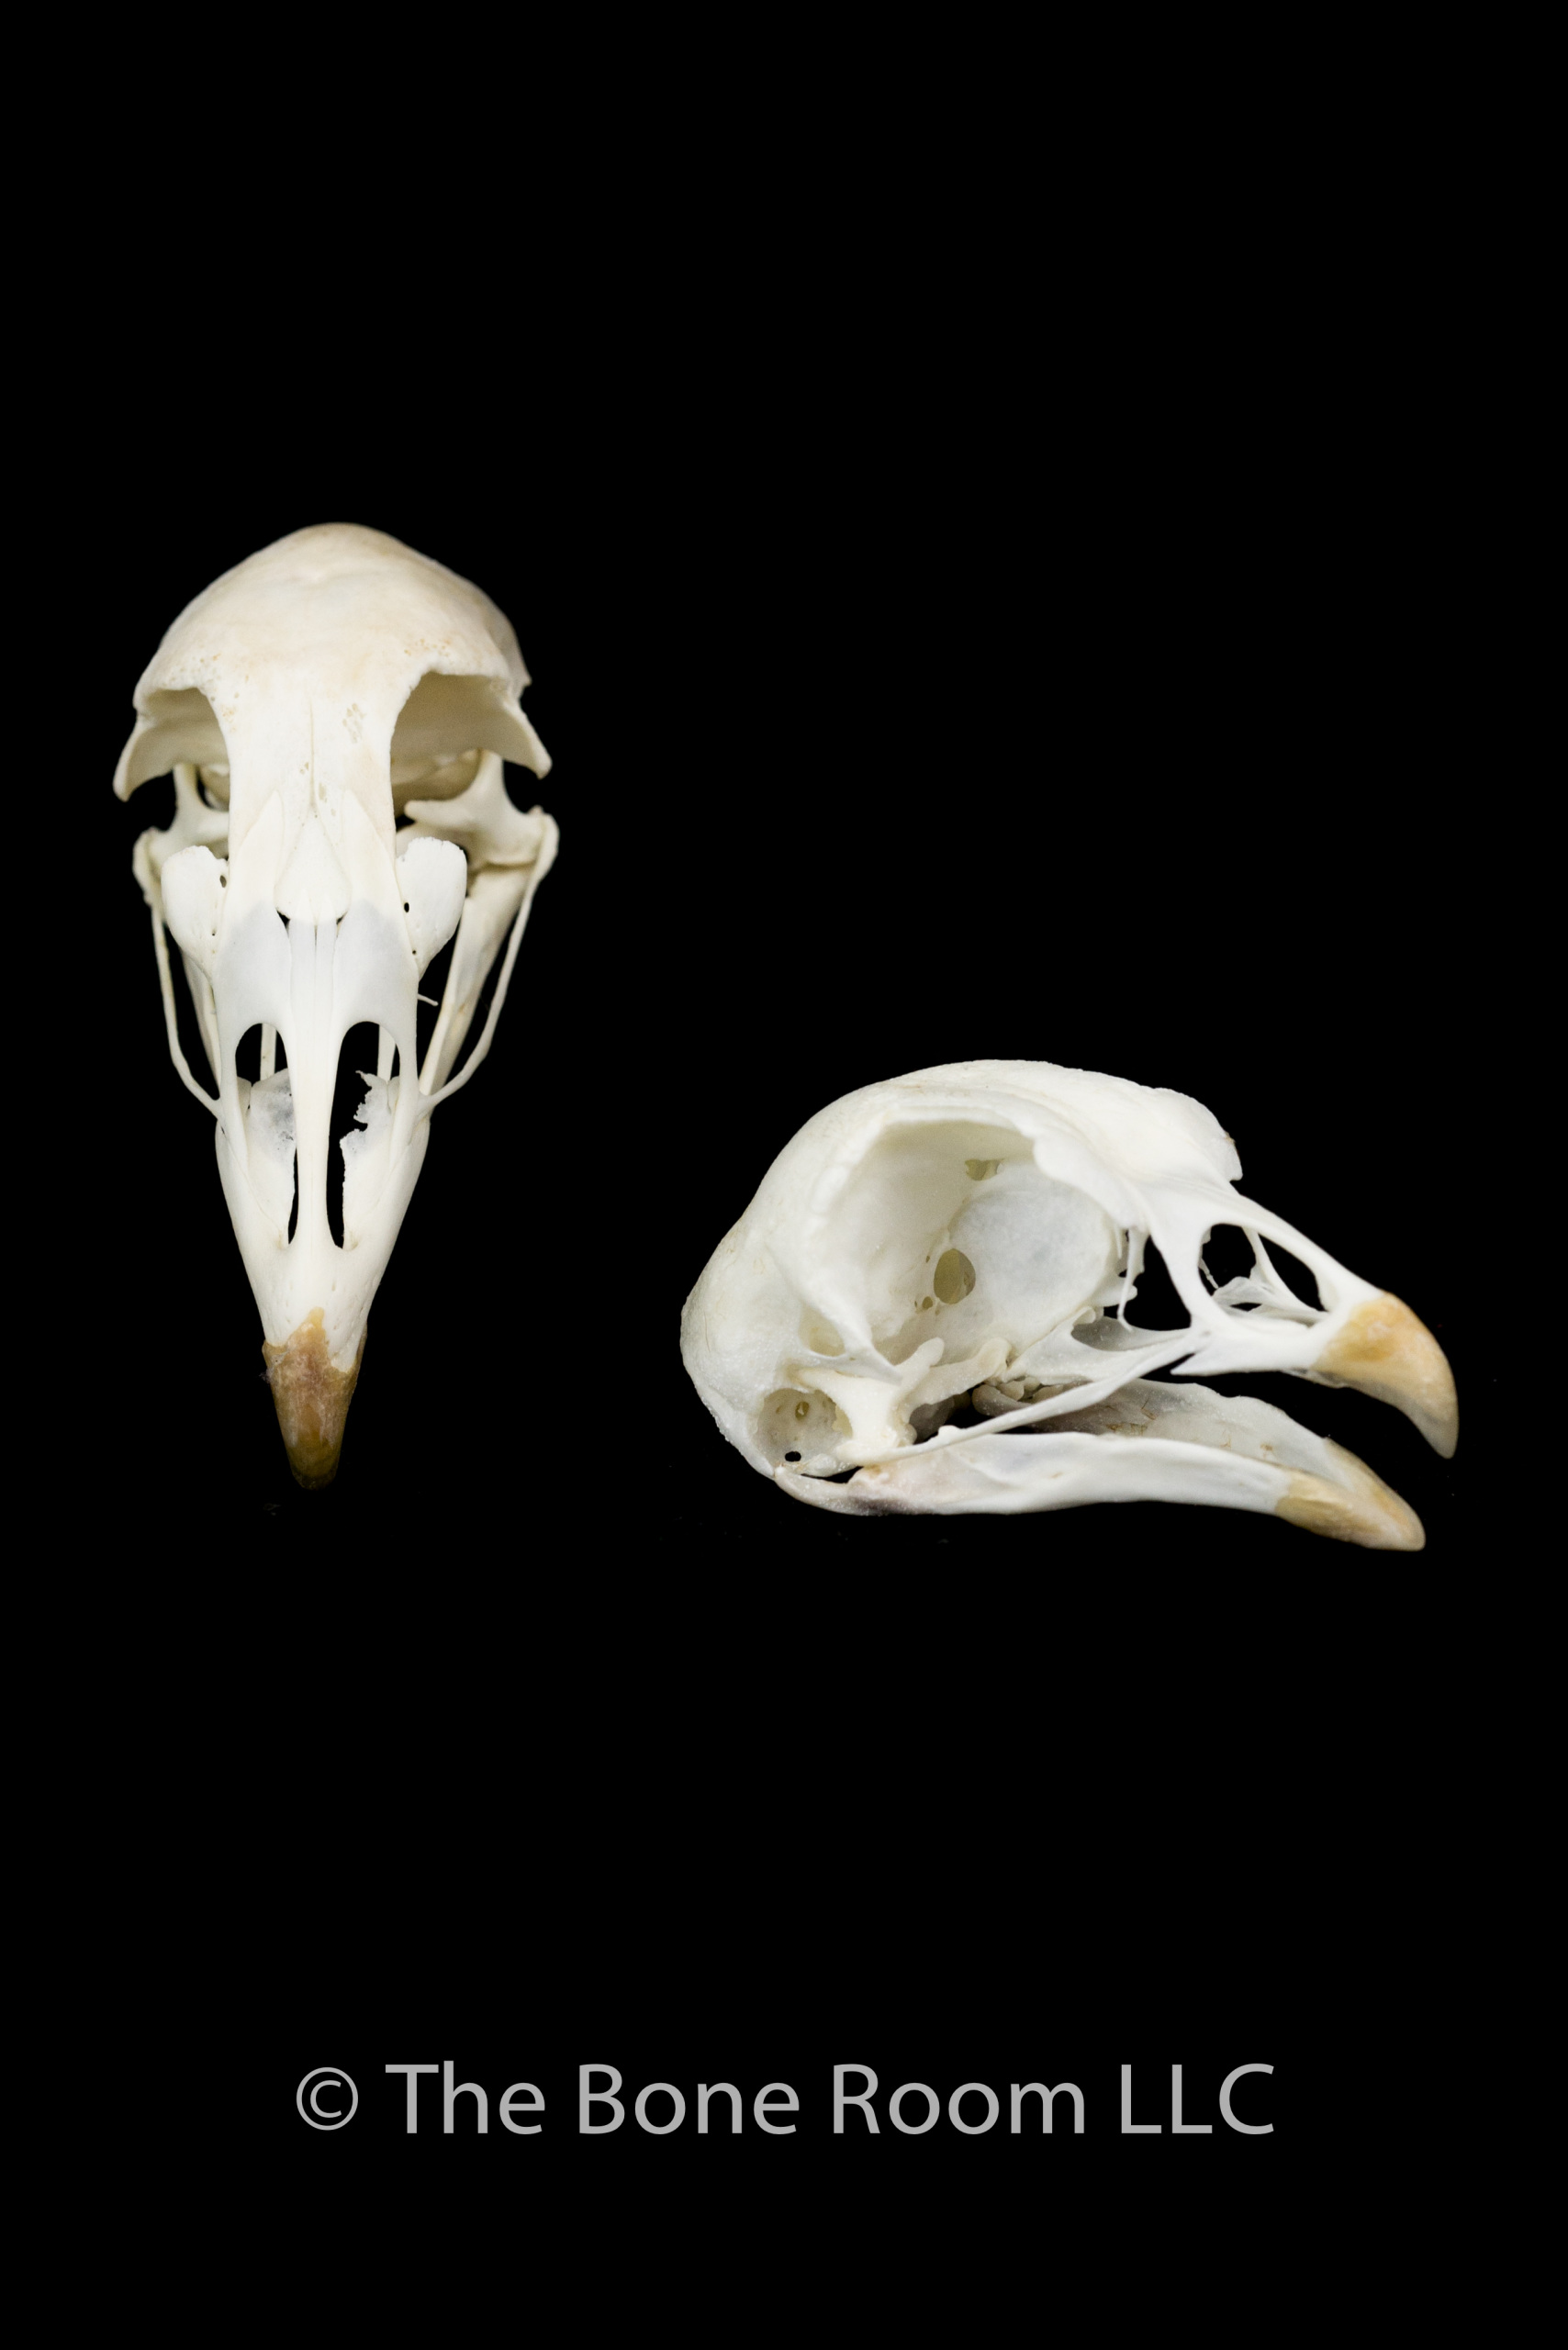 Bird skull photo